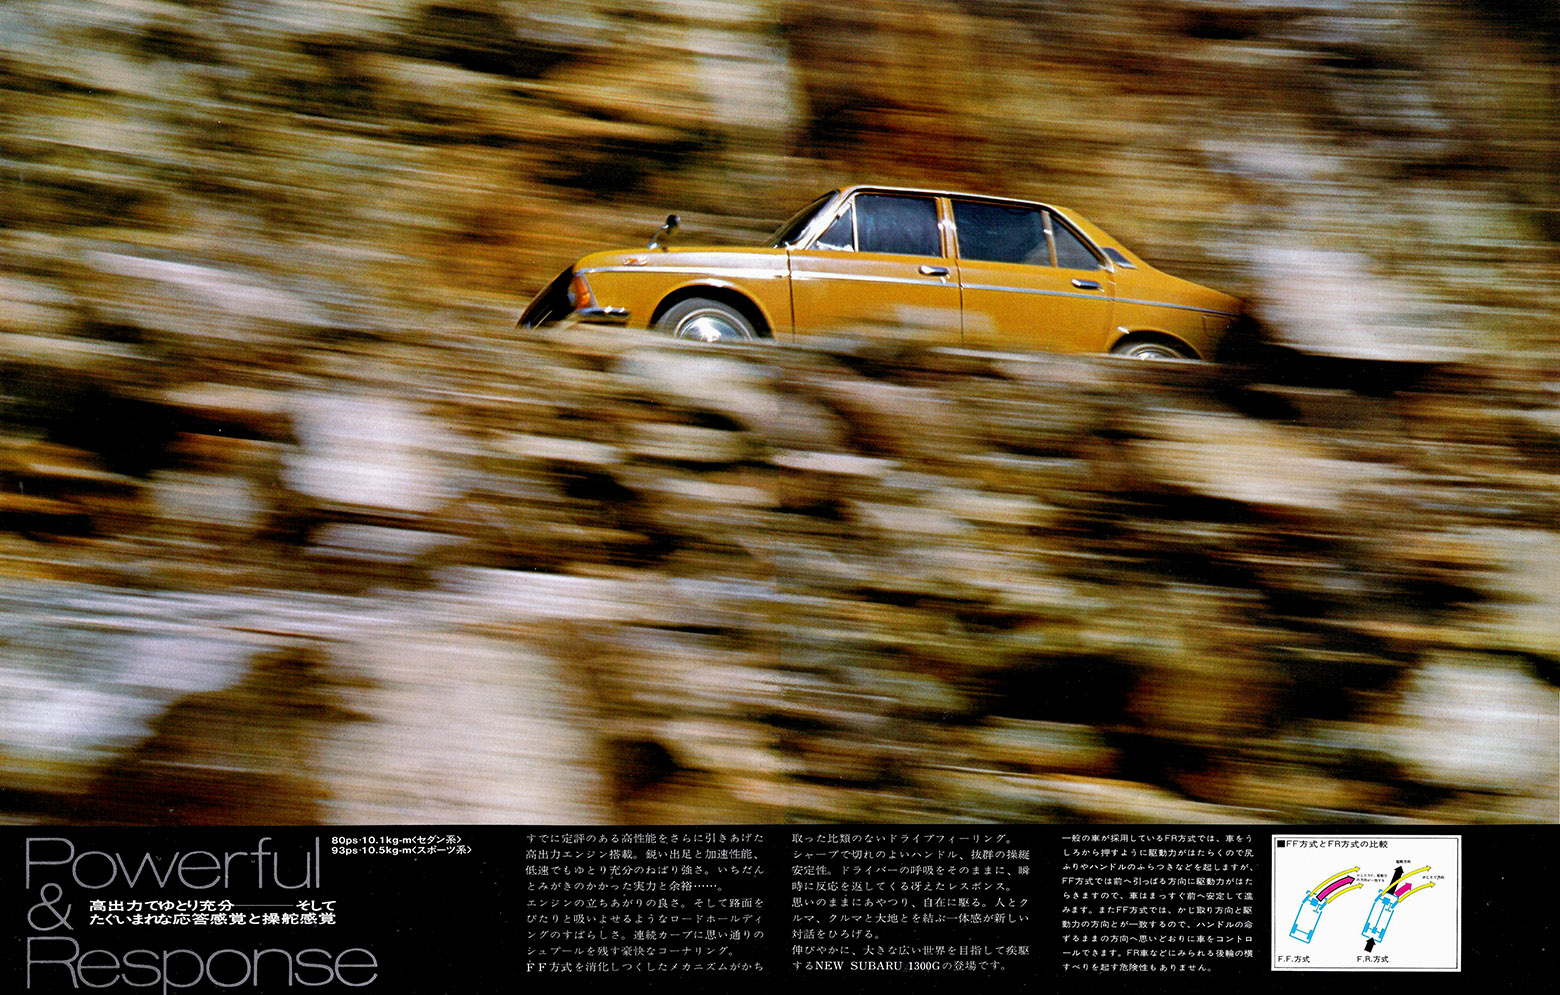 1997年11月発行 New スバル 1300G シリーズ (4)